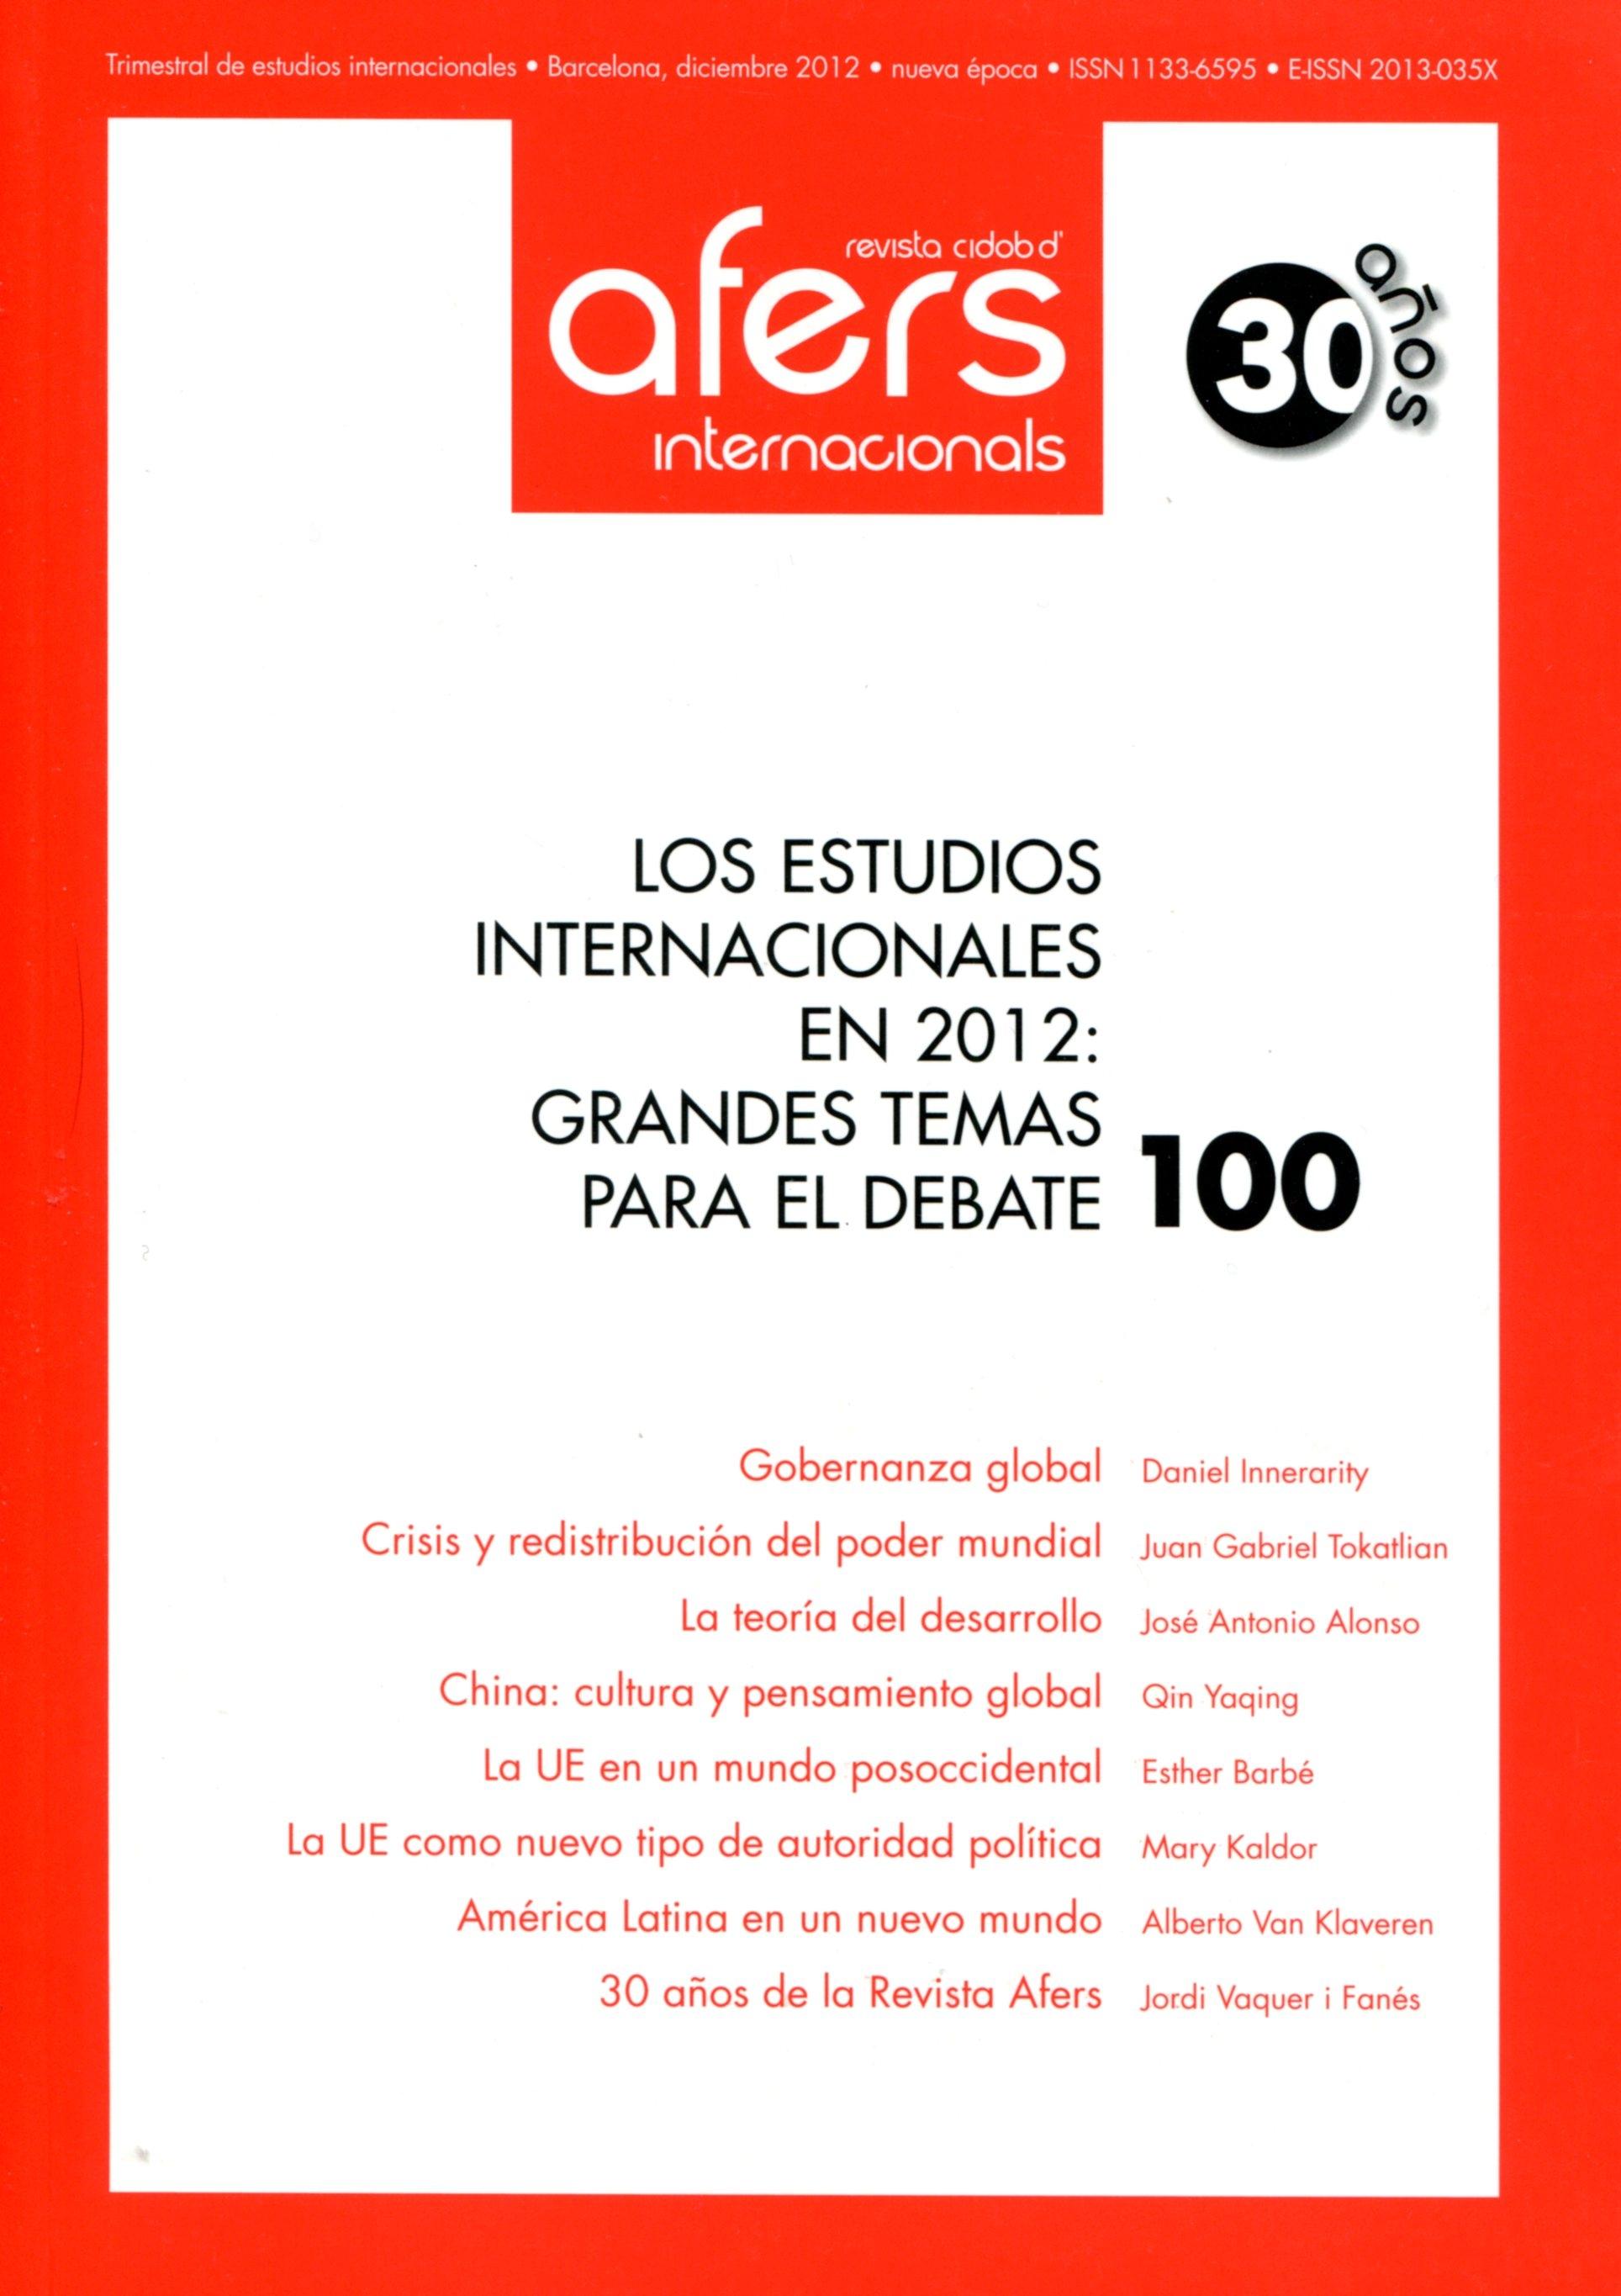 Los estudios internacionales en 2012 "Grandes temas para el debate"